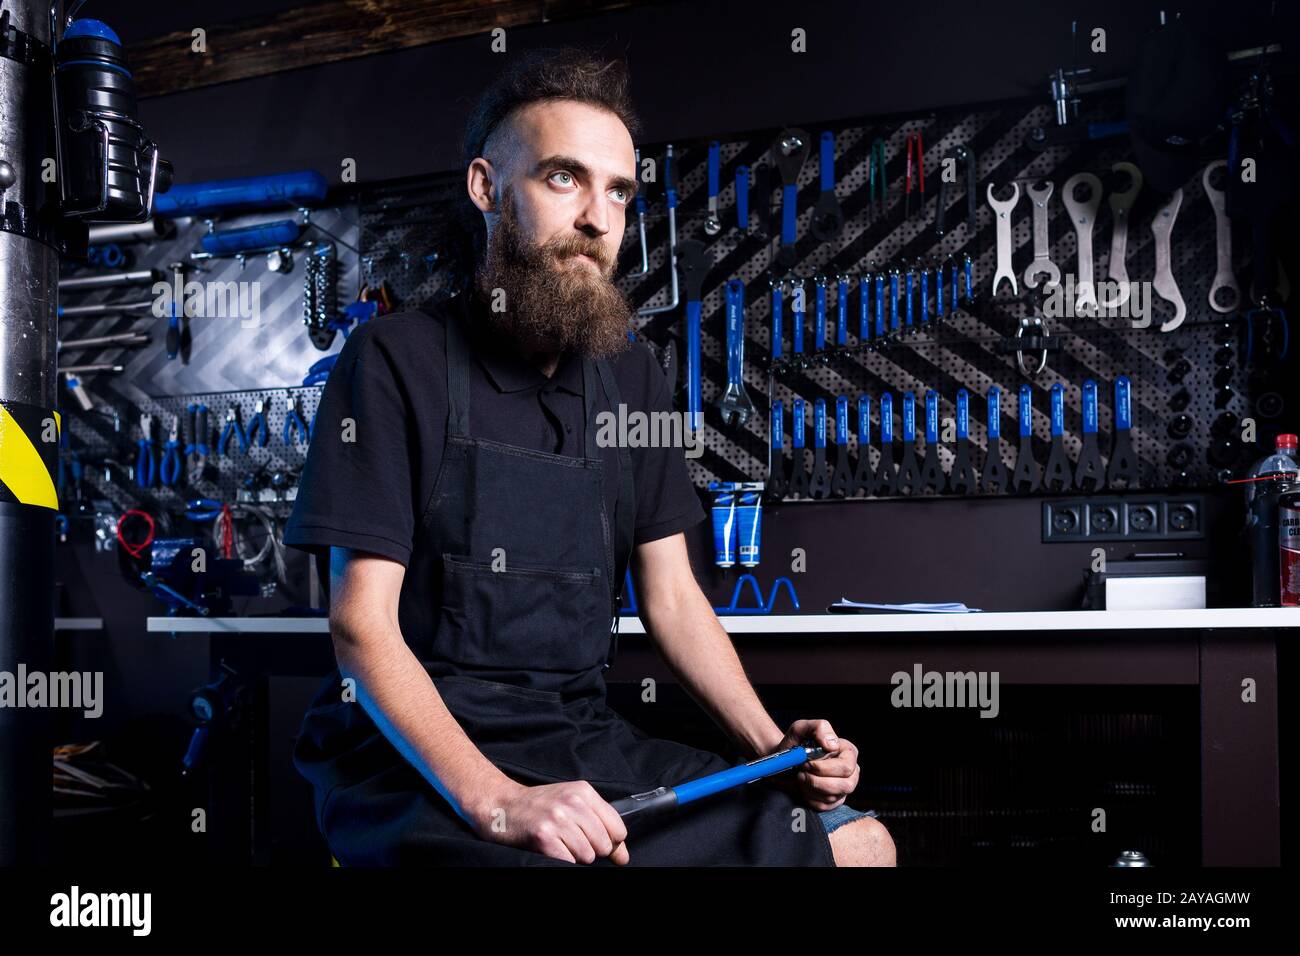 Ritratto di piccola impresa proprietario di giovane uomo con barba. Ragazzo di bicicletta meccanico officina lavoratore seduto con l'attrezzo in mano Foto Stock